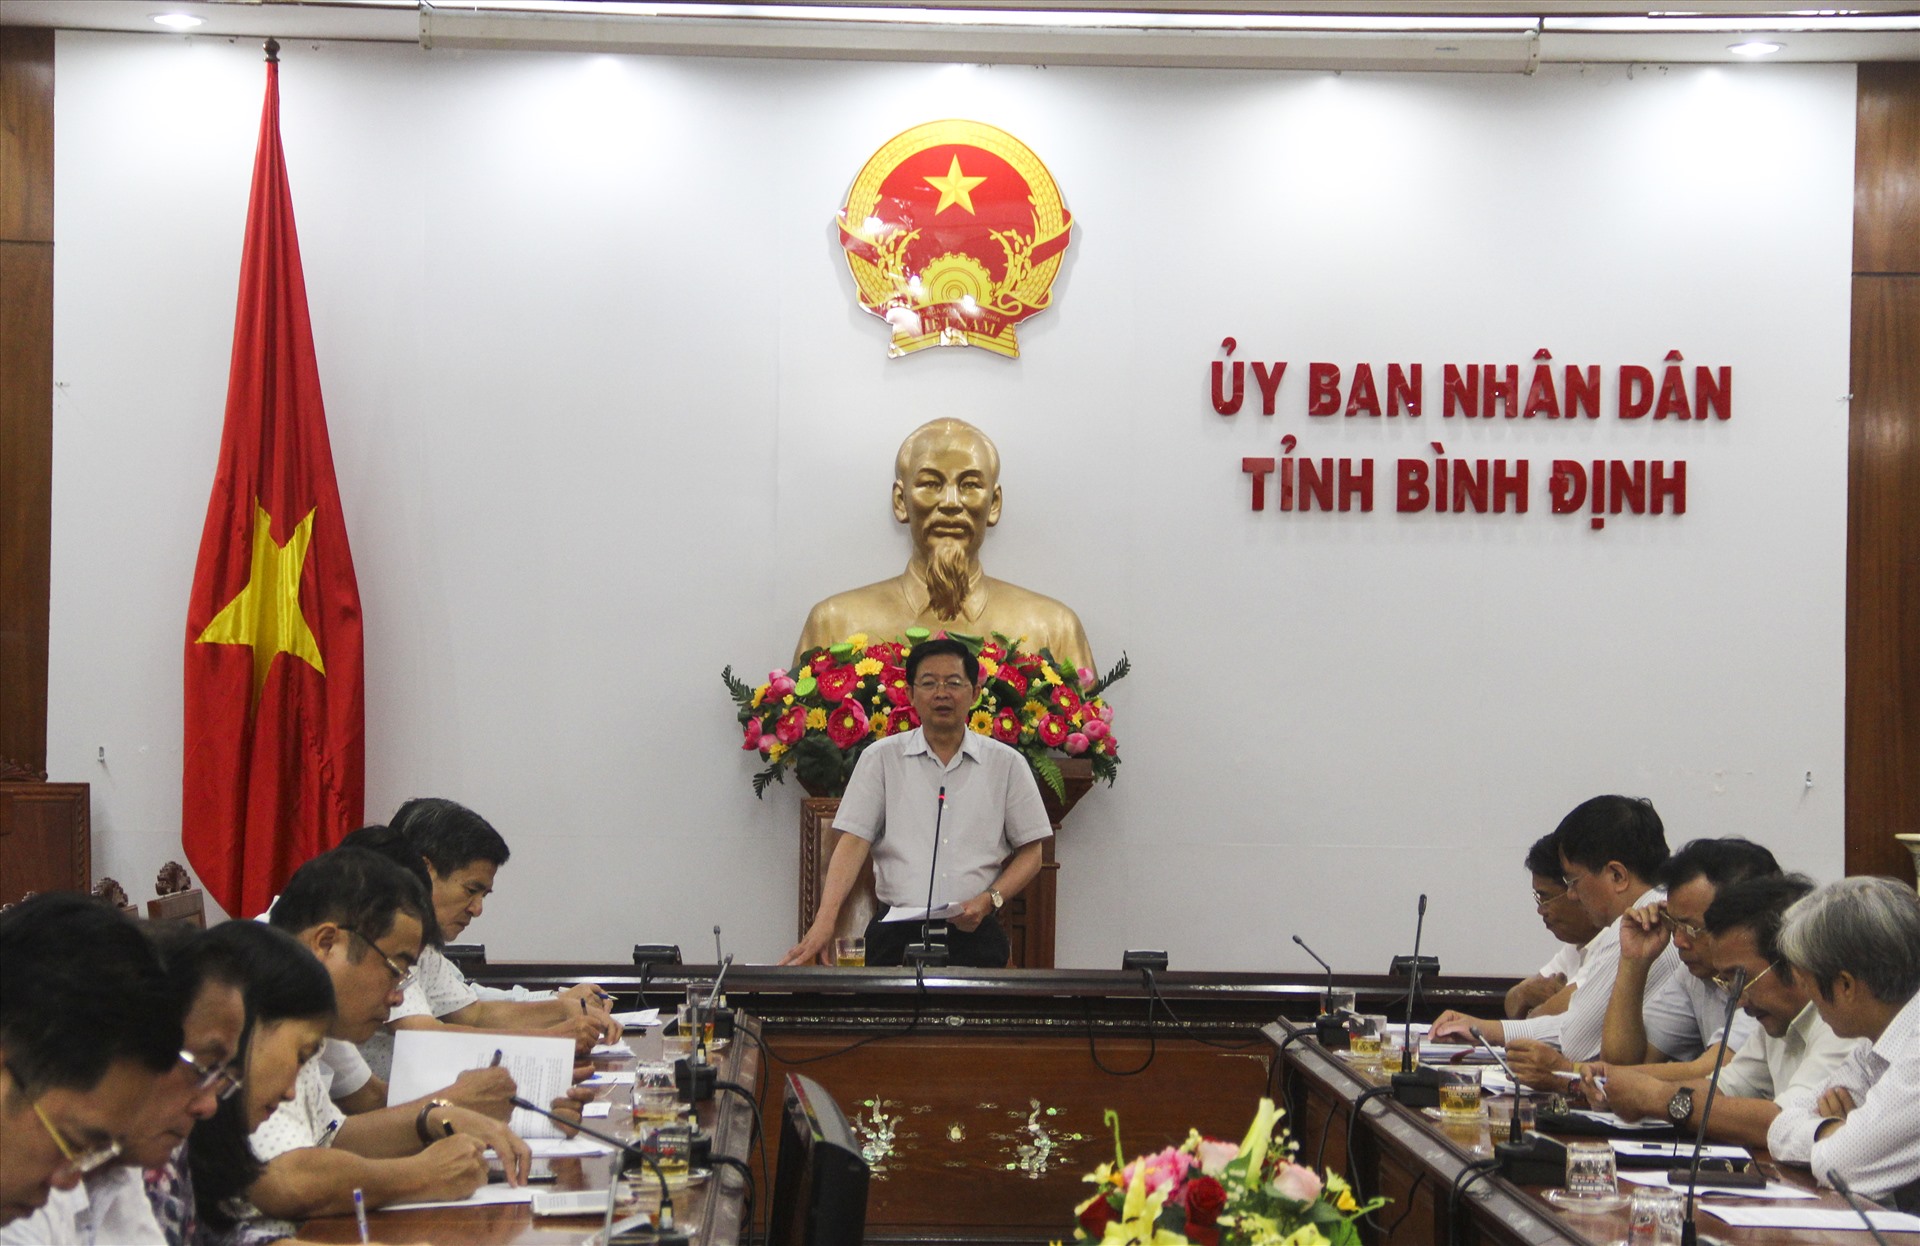 Chủ tịch UBND tỉnh Bình Định – Hồ Quốc Dũng chủ trì buổi họp giải quyết khó khăn, vướng mắc trong sản xuất kinh doanh của các doanh nghiệp.